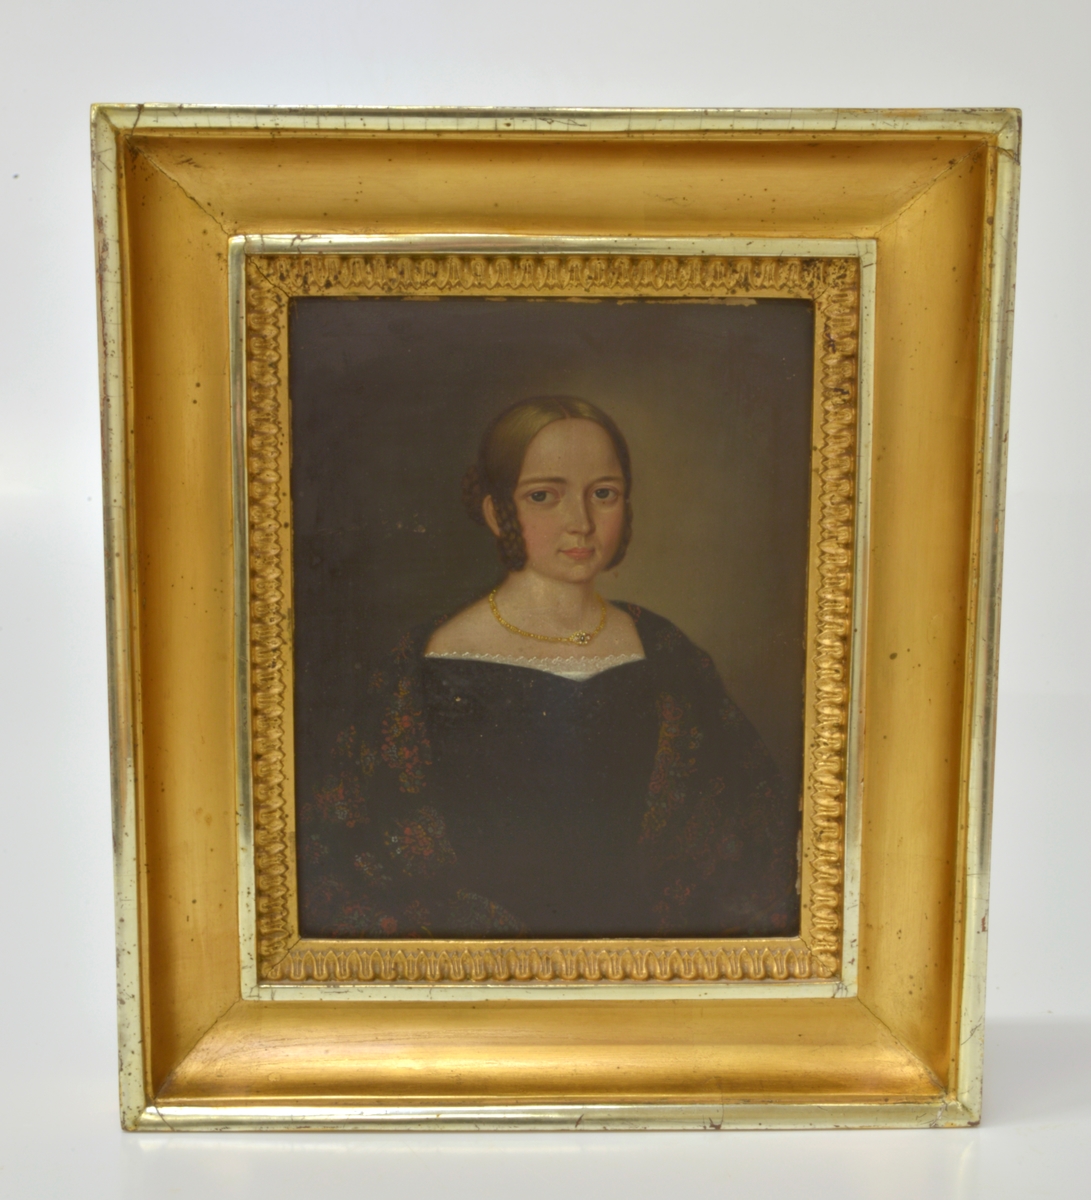 Osignerat porträtt föreställande Carin Maria Brun. Målningen beställdes inför hennes bröllop 1844 och har en förgylld ram. I museets samlingar finns flera föremål relaterade till Carin Maria Brun. Bland annat en dopklänning sydd av hennes bröllopsklänning, se AM 2017-05-a-c.